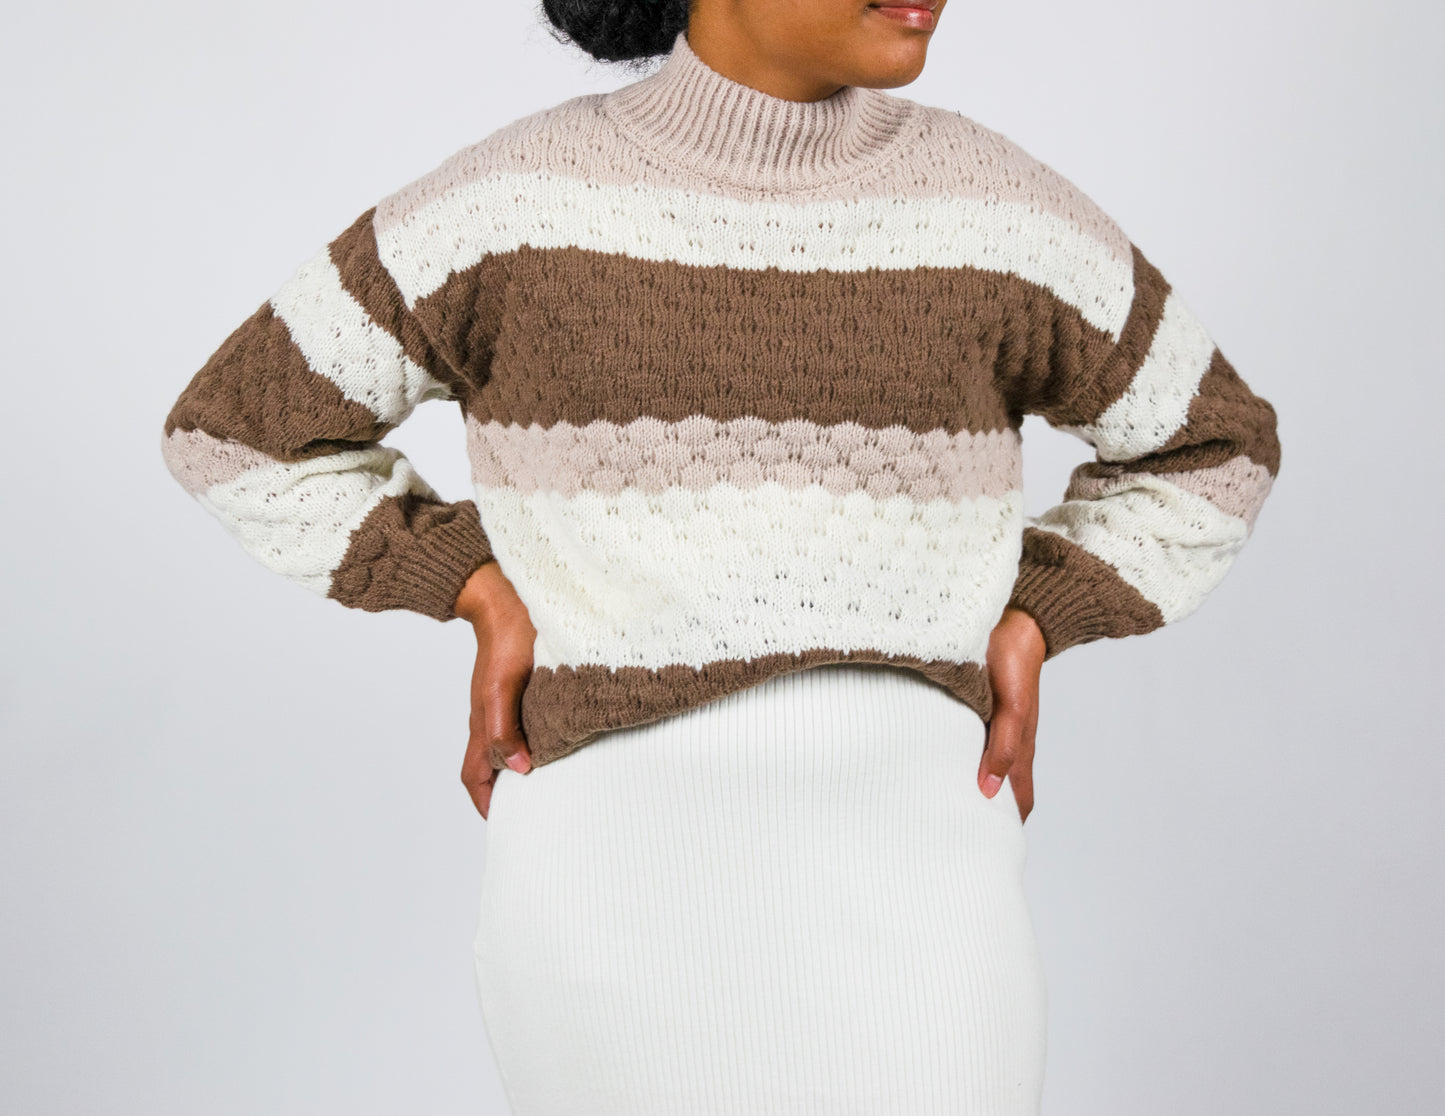 Wrenlee Knit Sweater